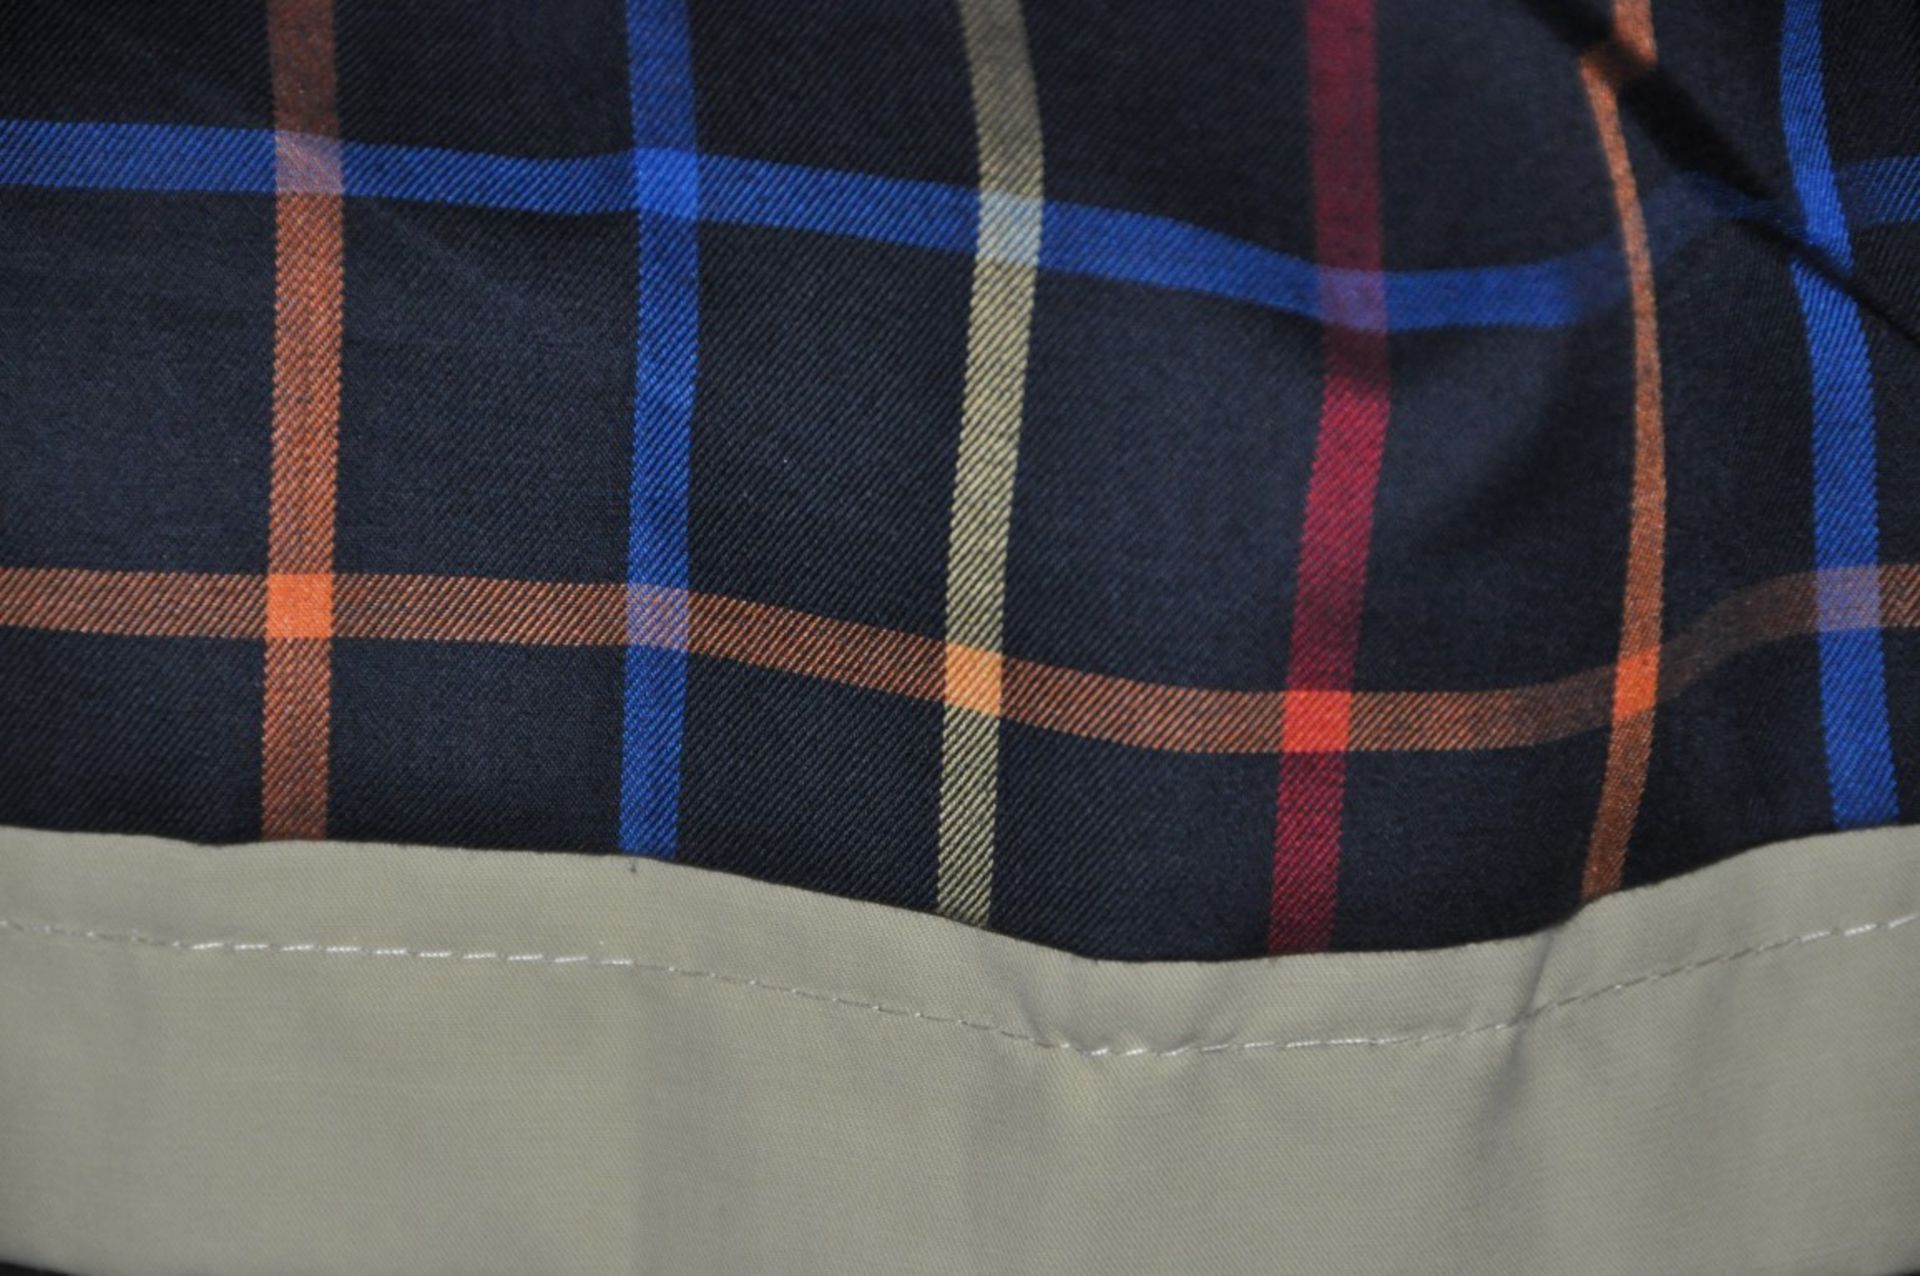 1 x Men's Trench Coat / Long Jacket By International Luxury Brand "Vasto" (BAD7107) – Size: Extra - Image 5 of 6